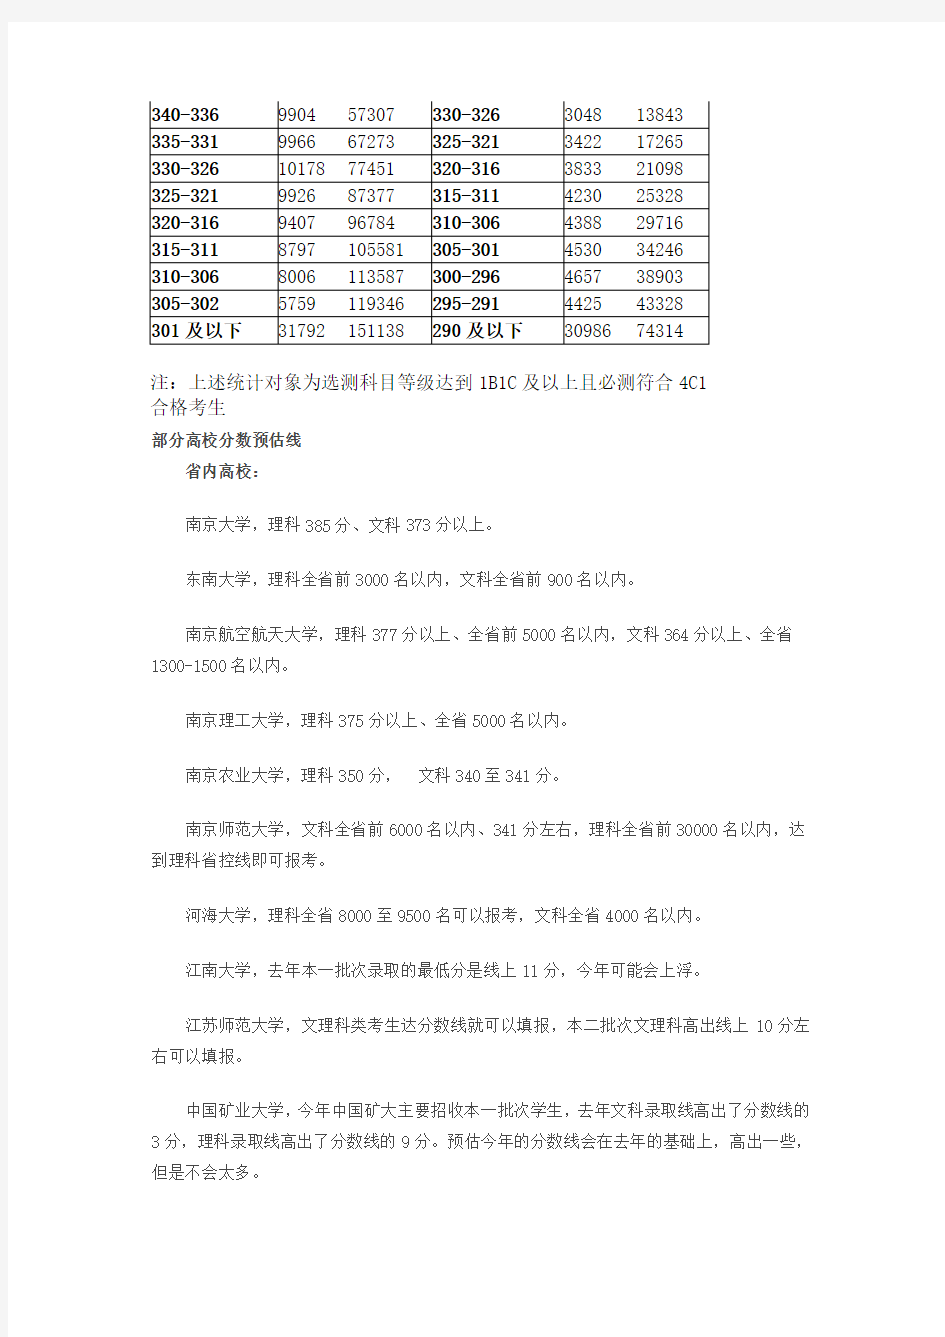 2014江苏高考分数段